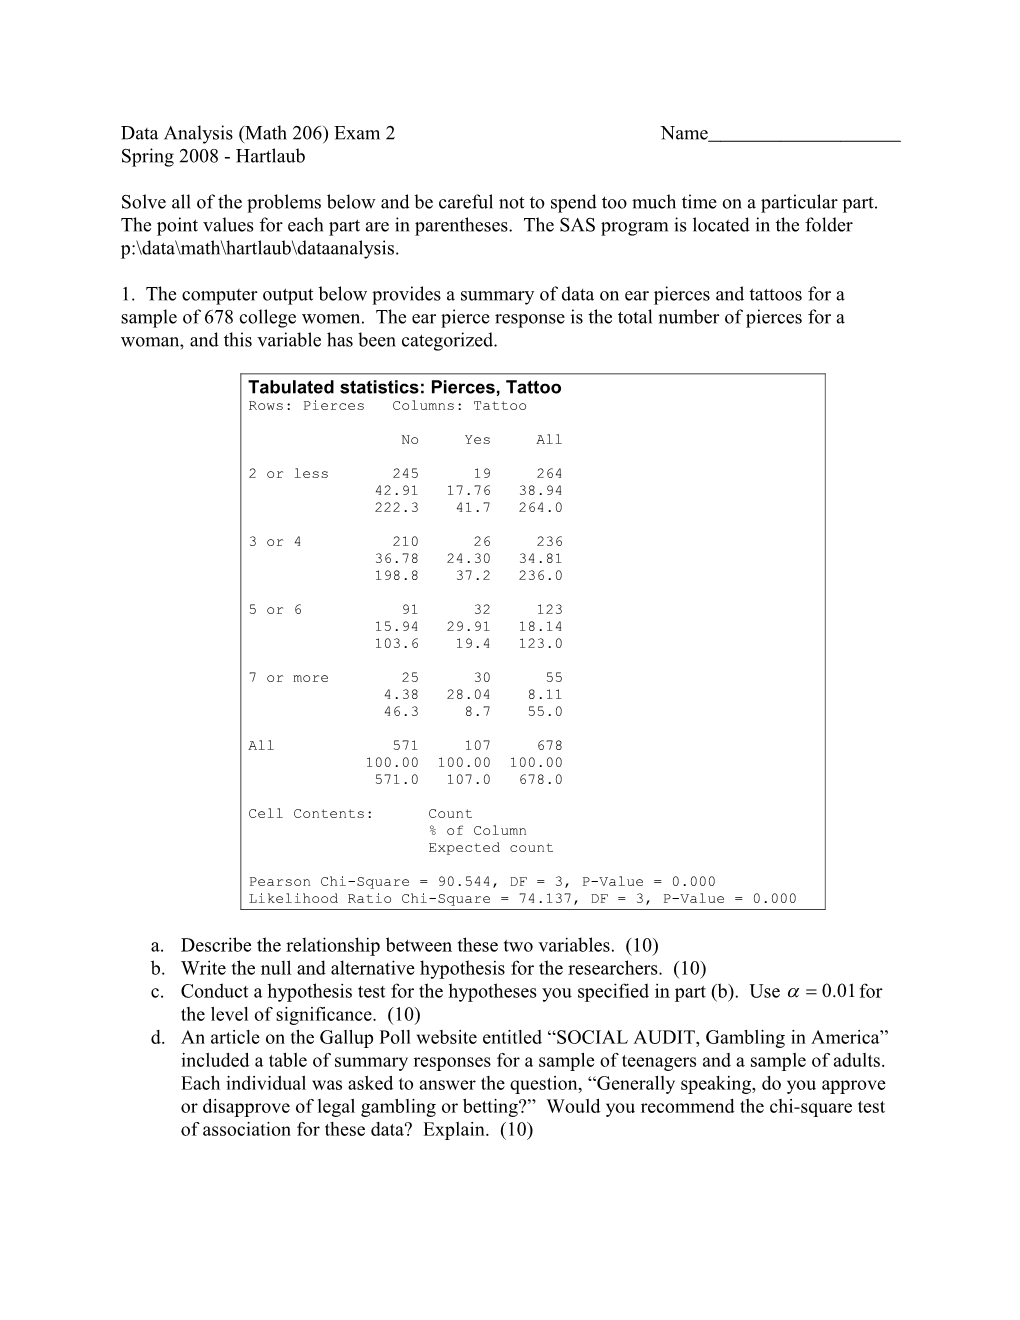 Data Analysis (Math 206) Exam 1